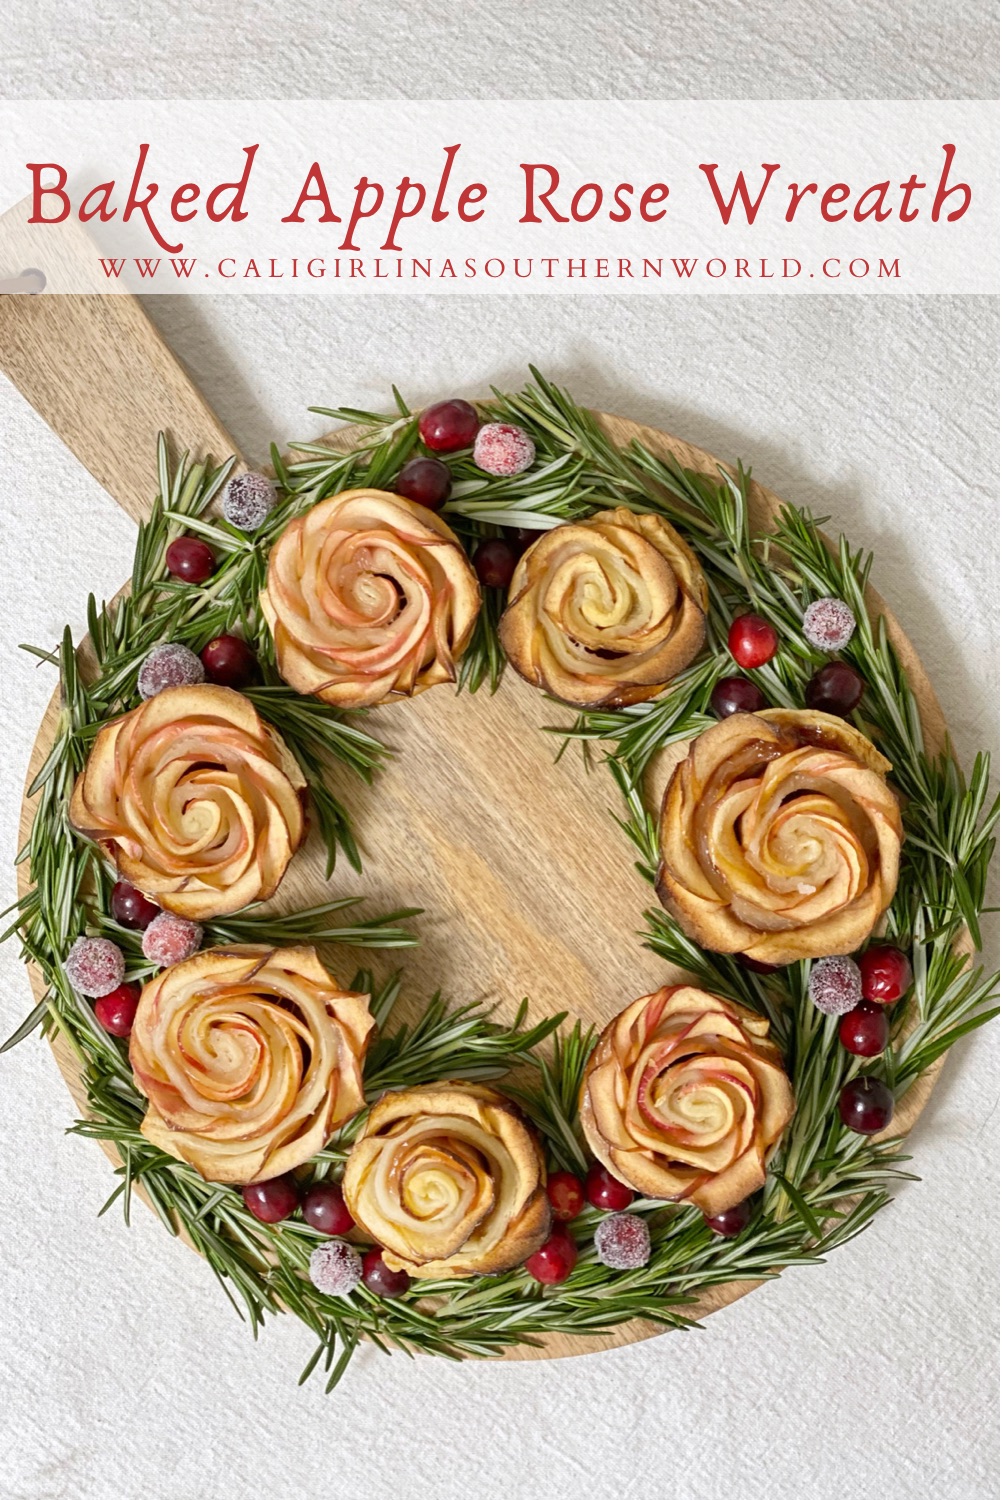 Pinterest Pin for baked apple rose wreath.